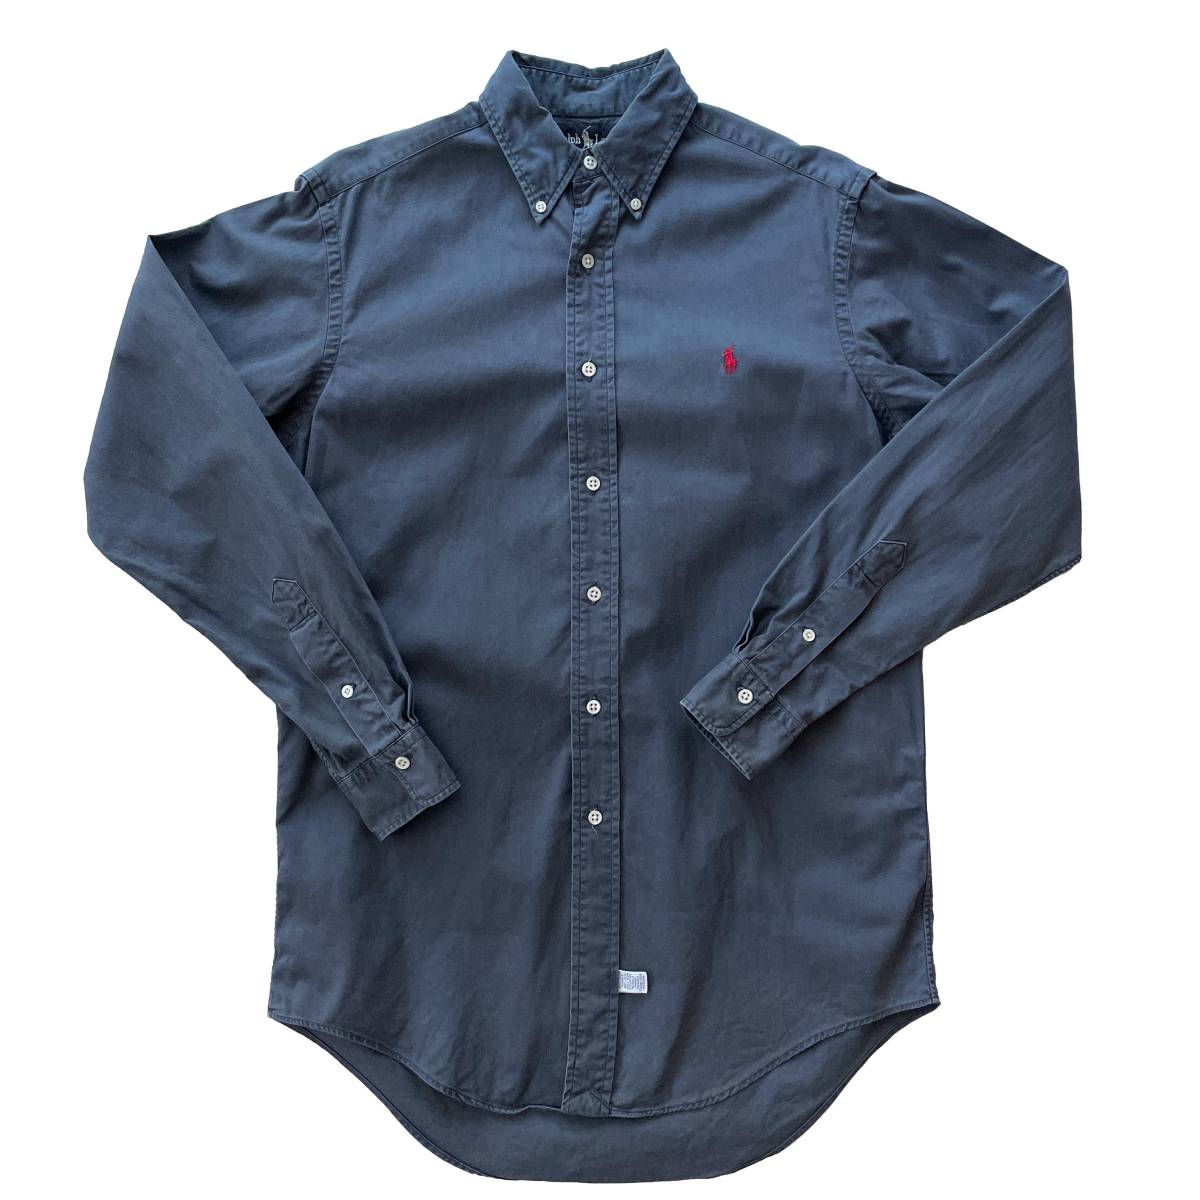 【Vintage】Ralph Lauren ツイルシャツ S ラルフローレン チノシャツ 紺 ネイビー 1990年代 MADE IN USA